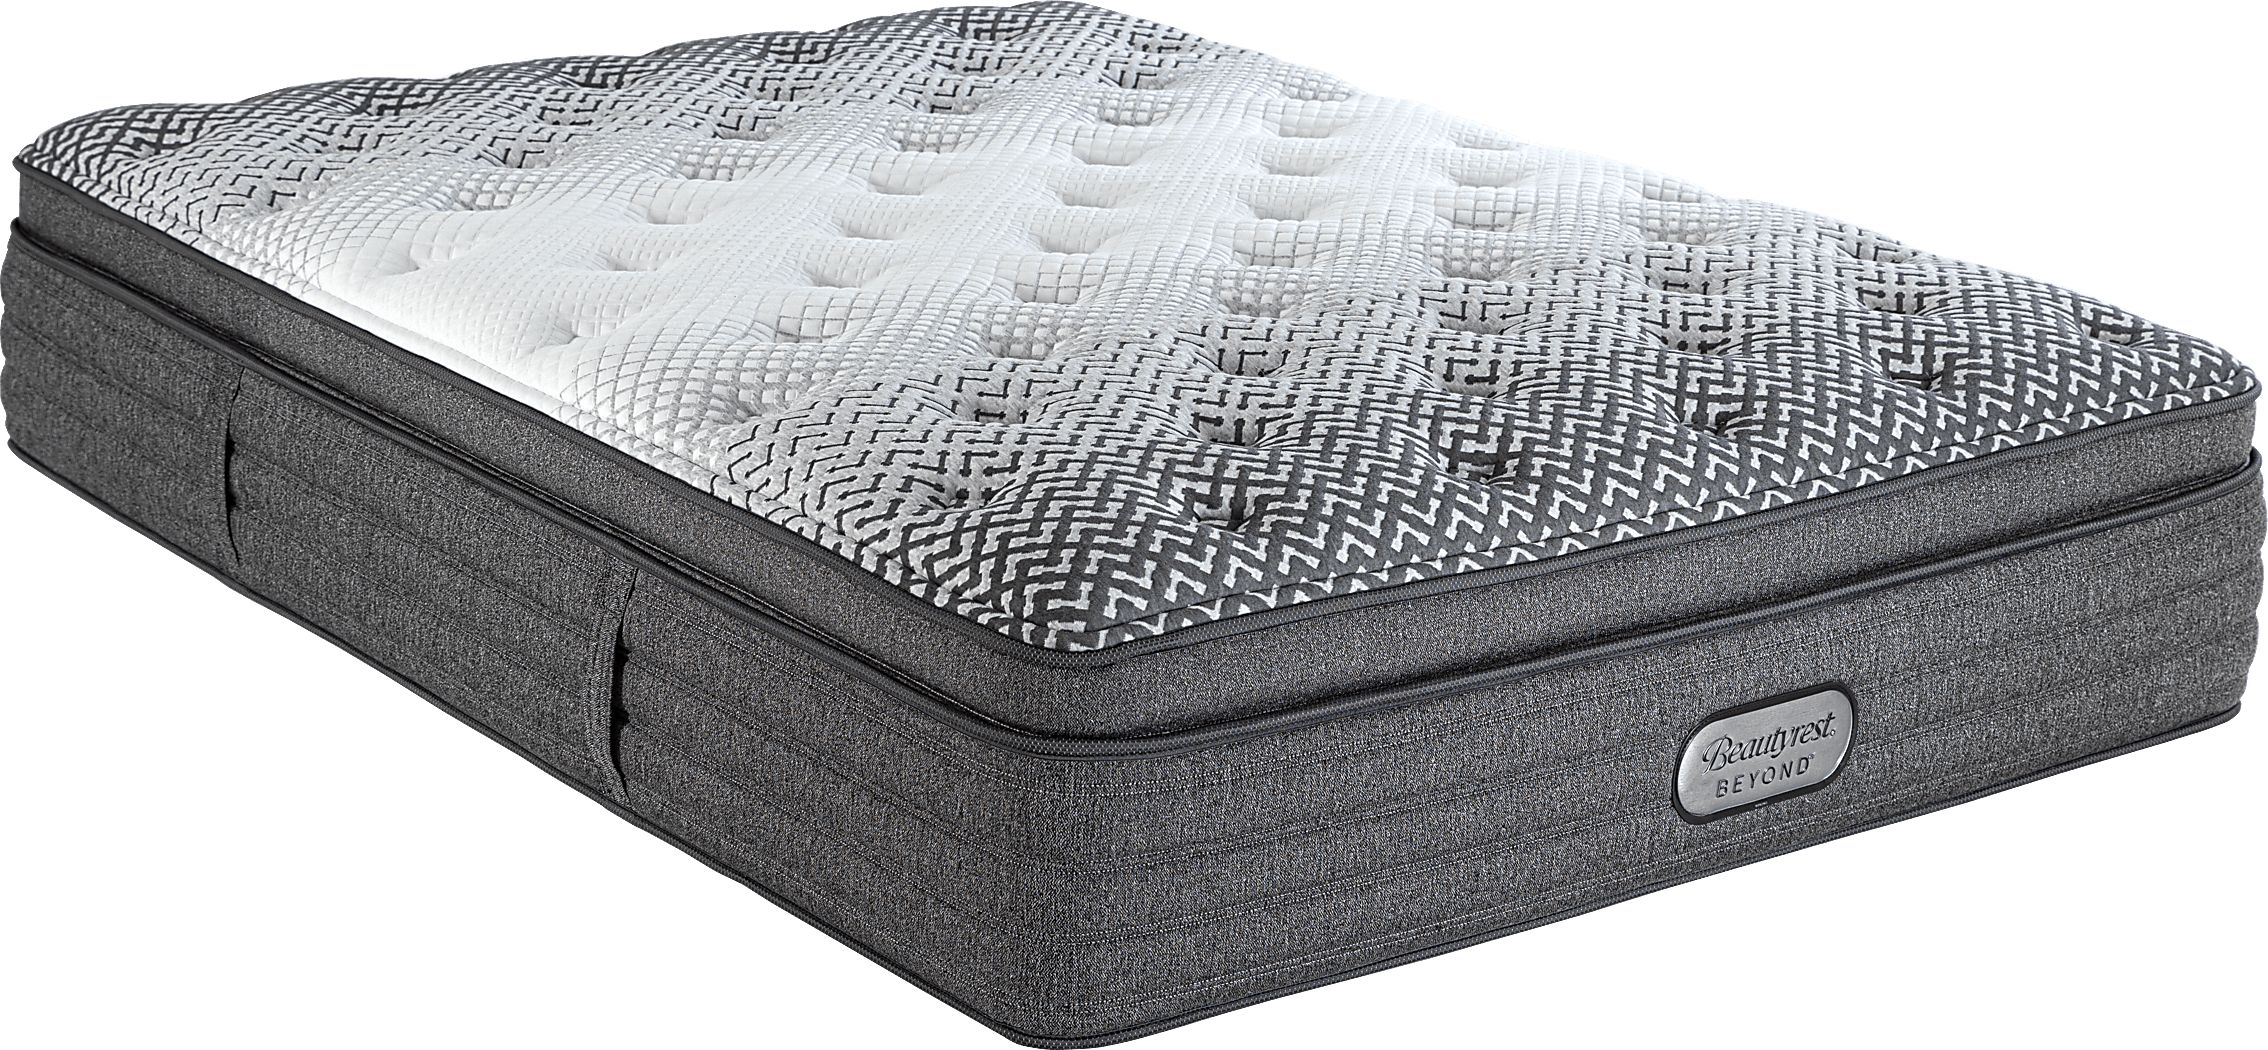 beautyrest beyond plush pillow top mattress